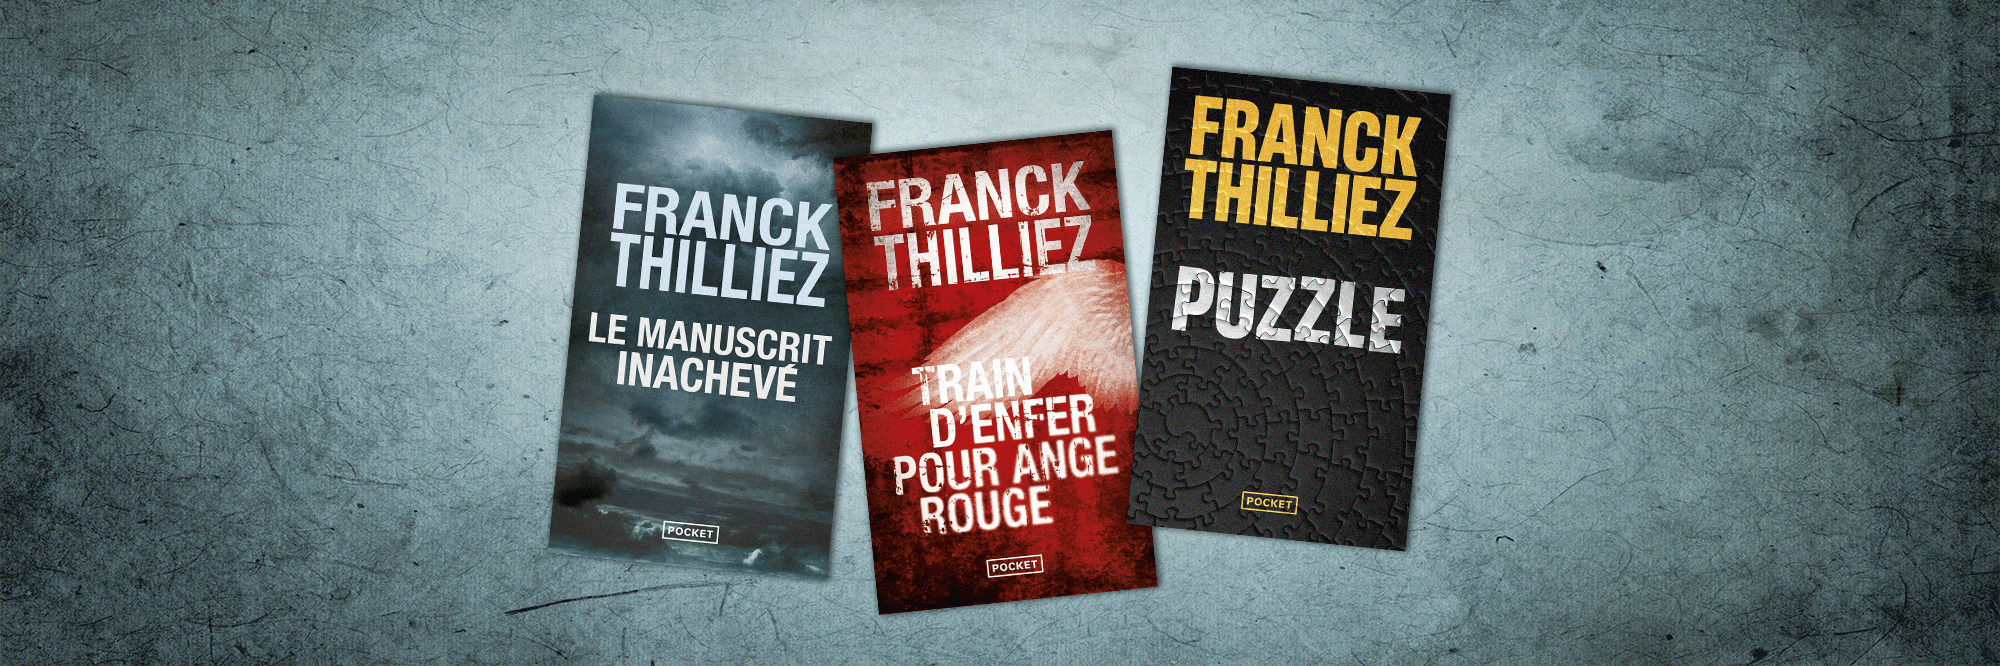 Livres de Franck Thilliez